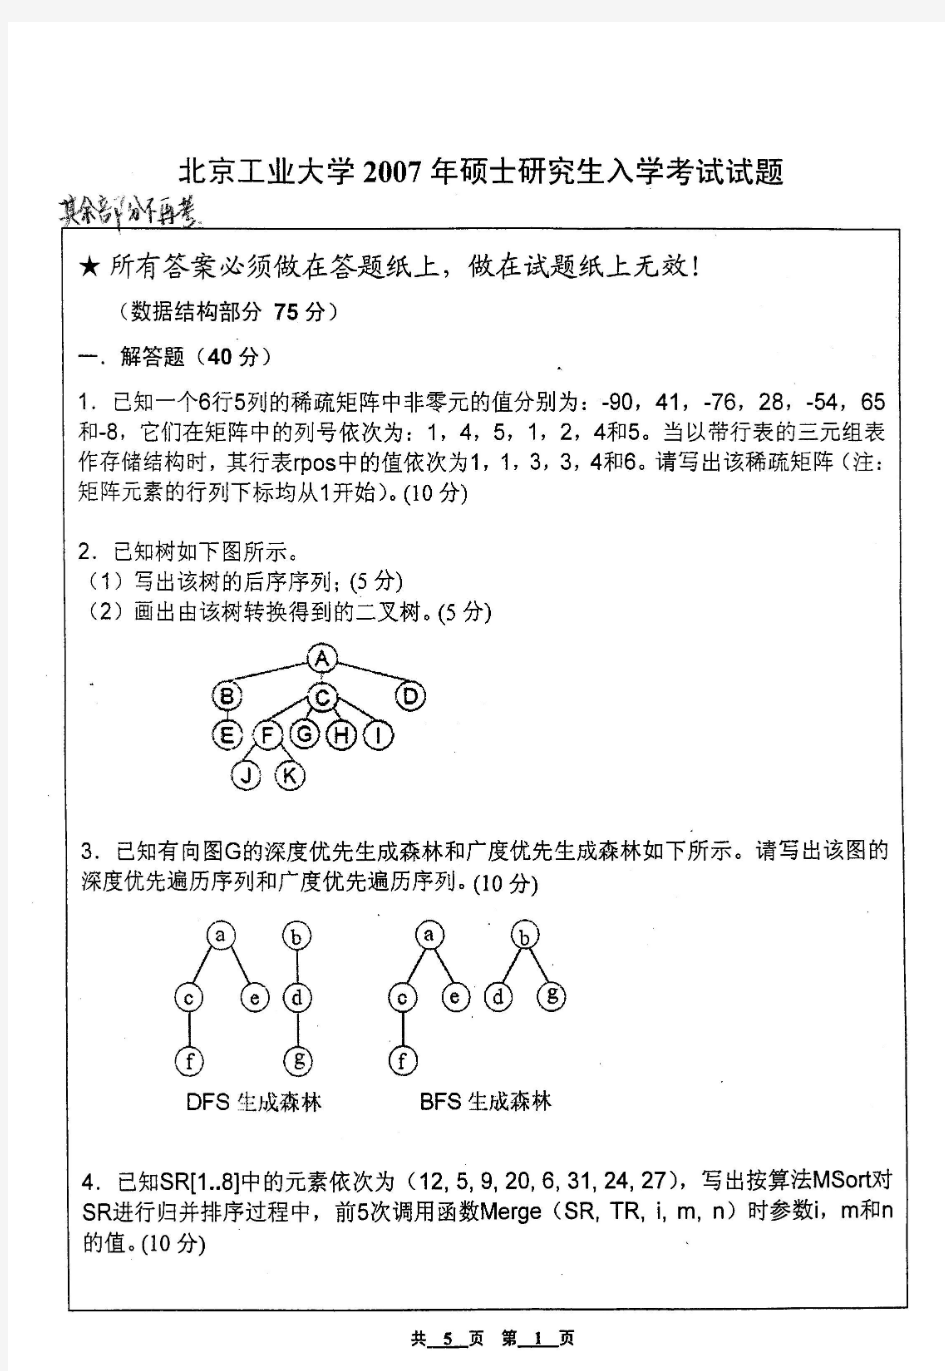 北京工业大学数据结构与C++程序设计考研真题试题2007年